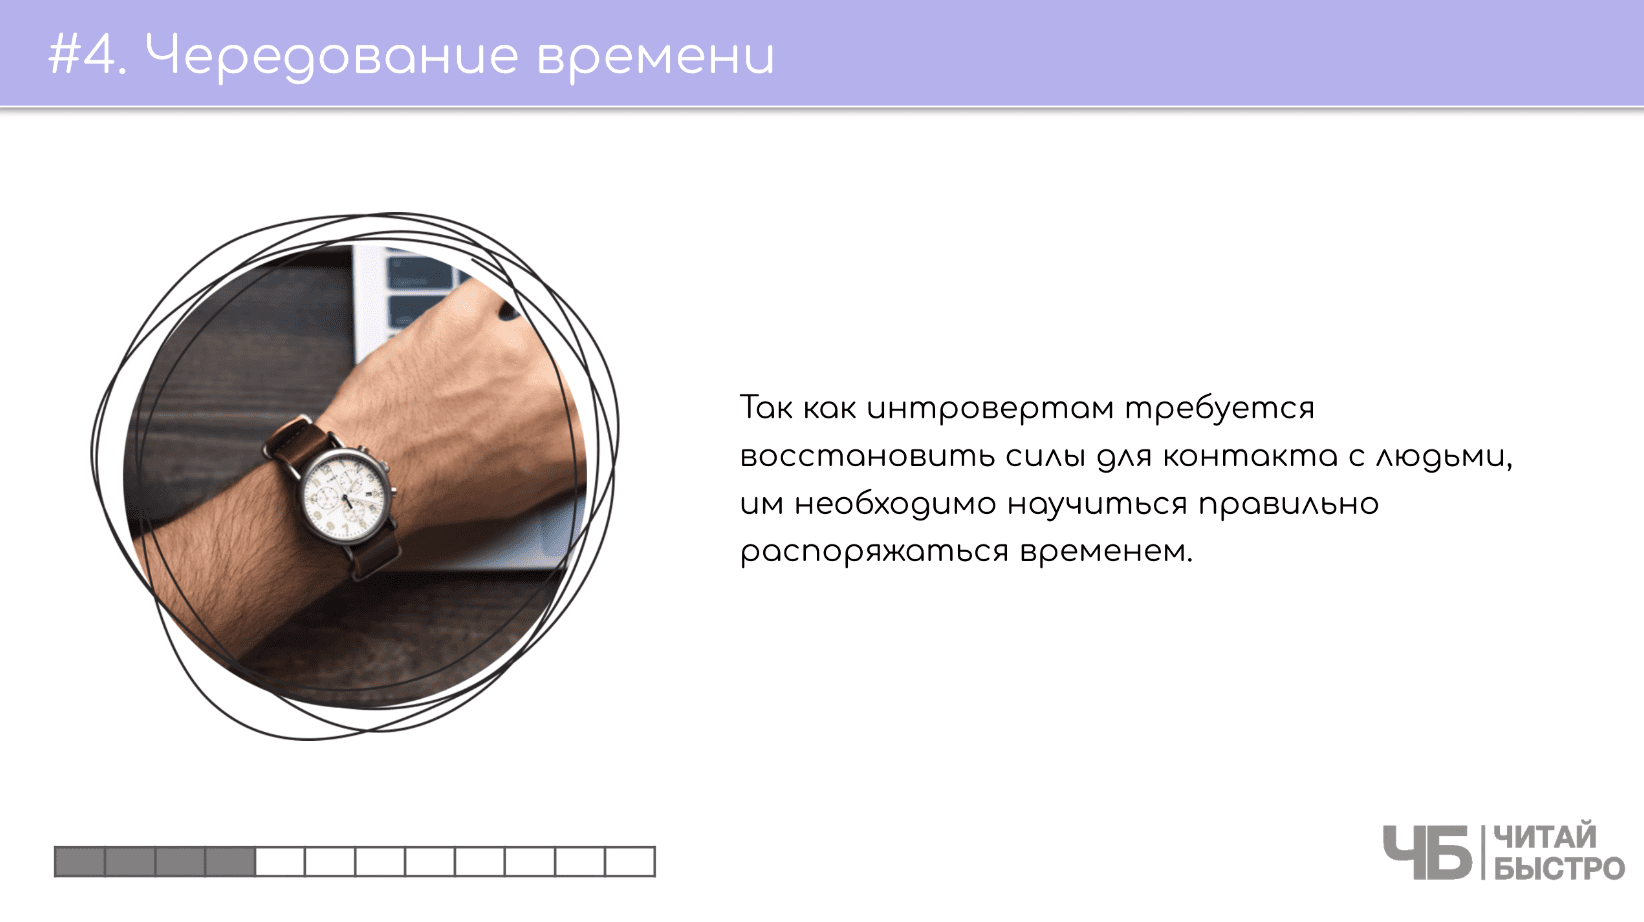 На этом слайде изображен тезис о чередовании времени и иллюстрация часов на руке.